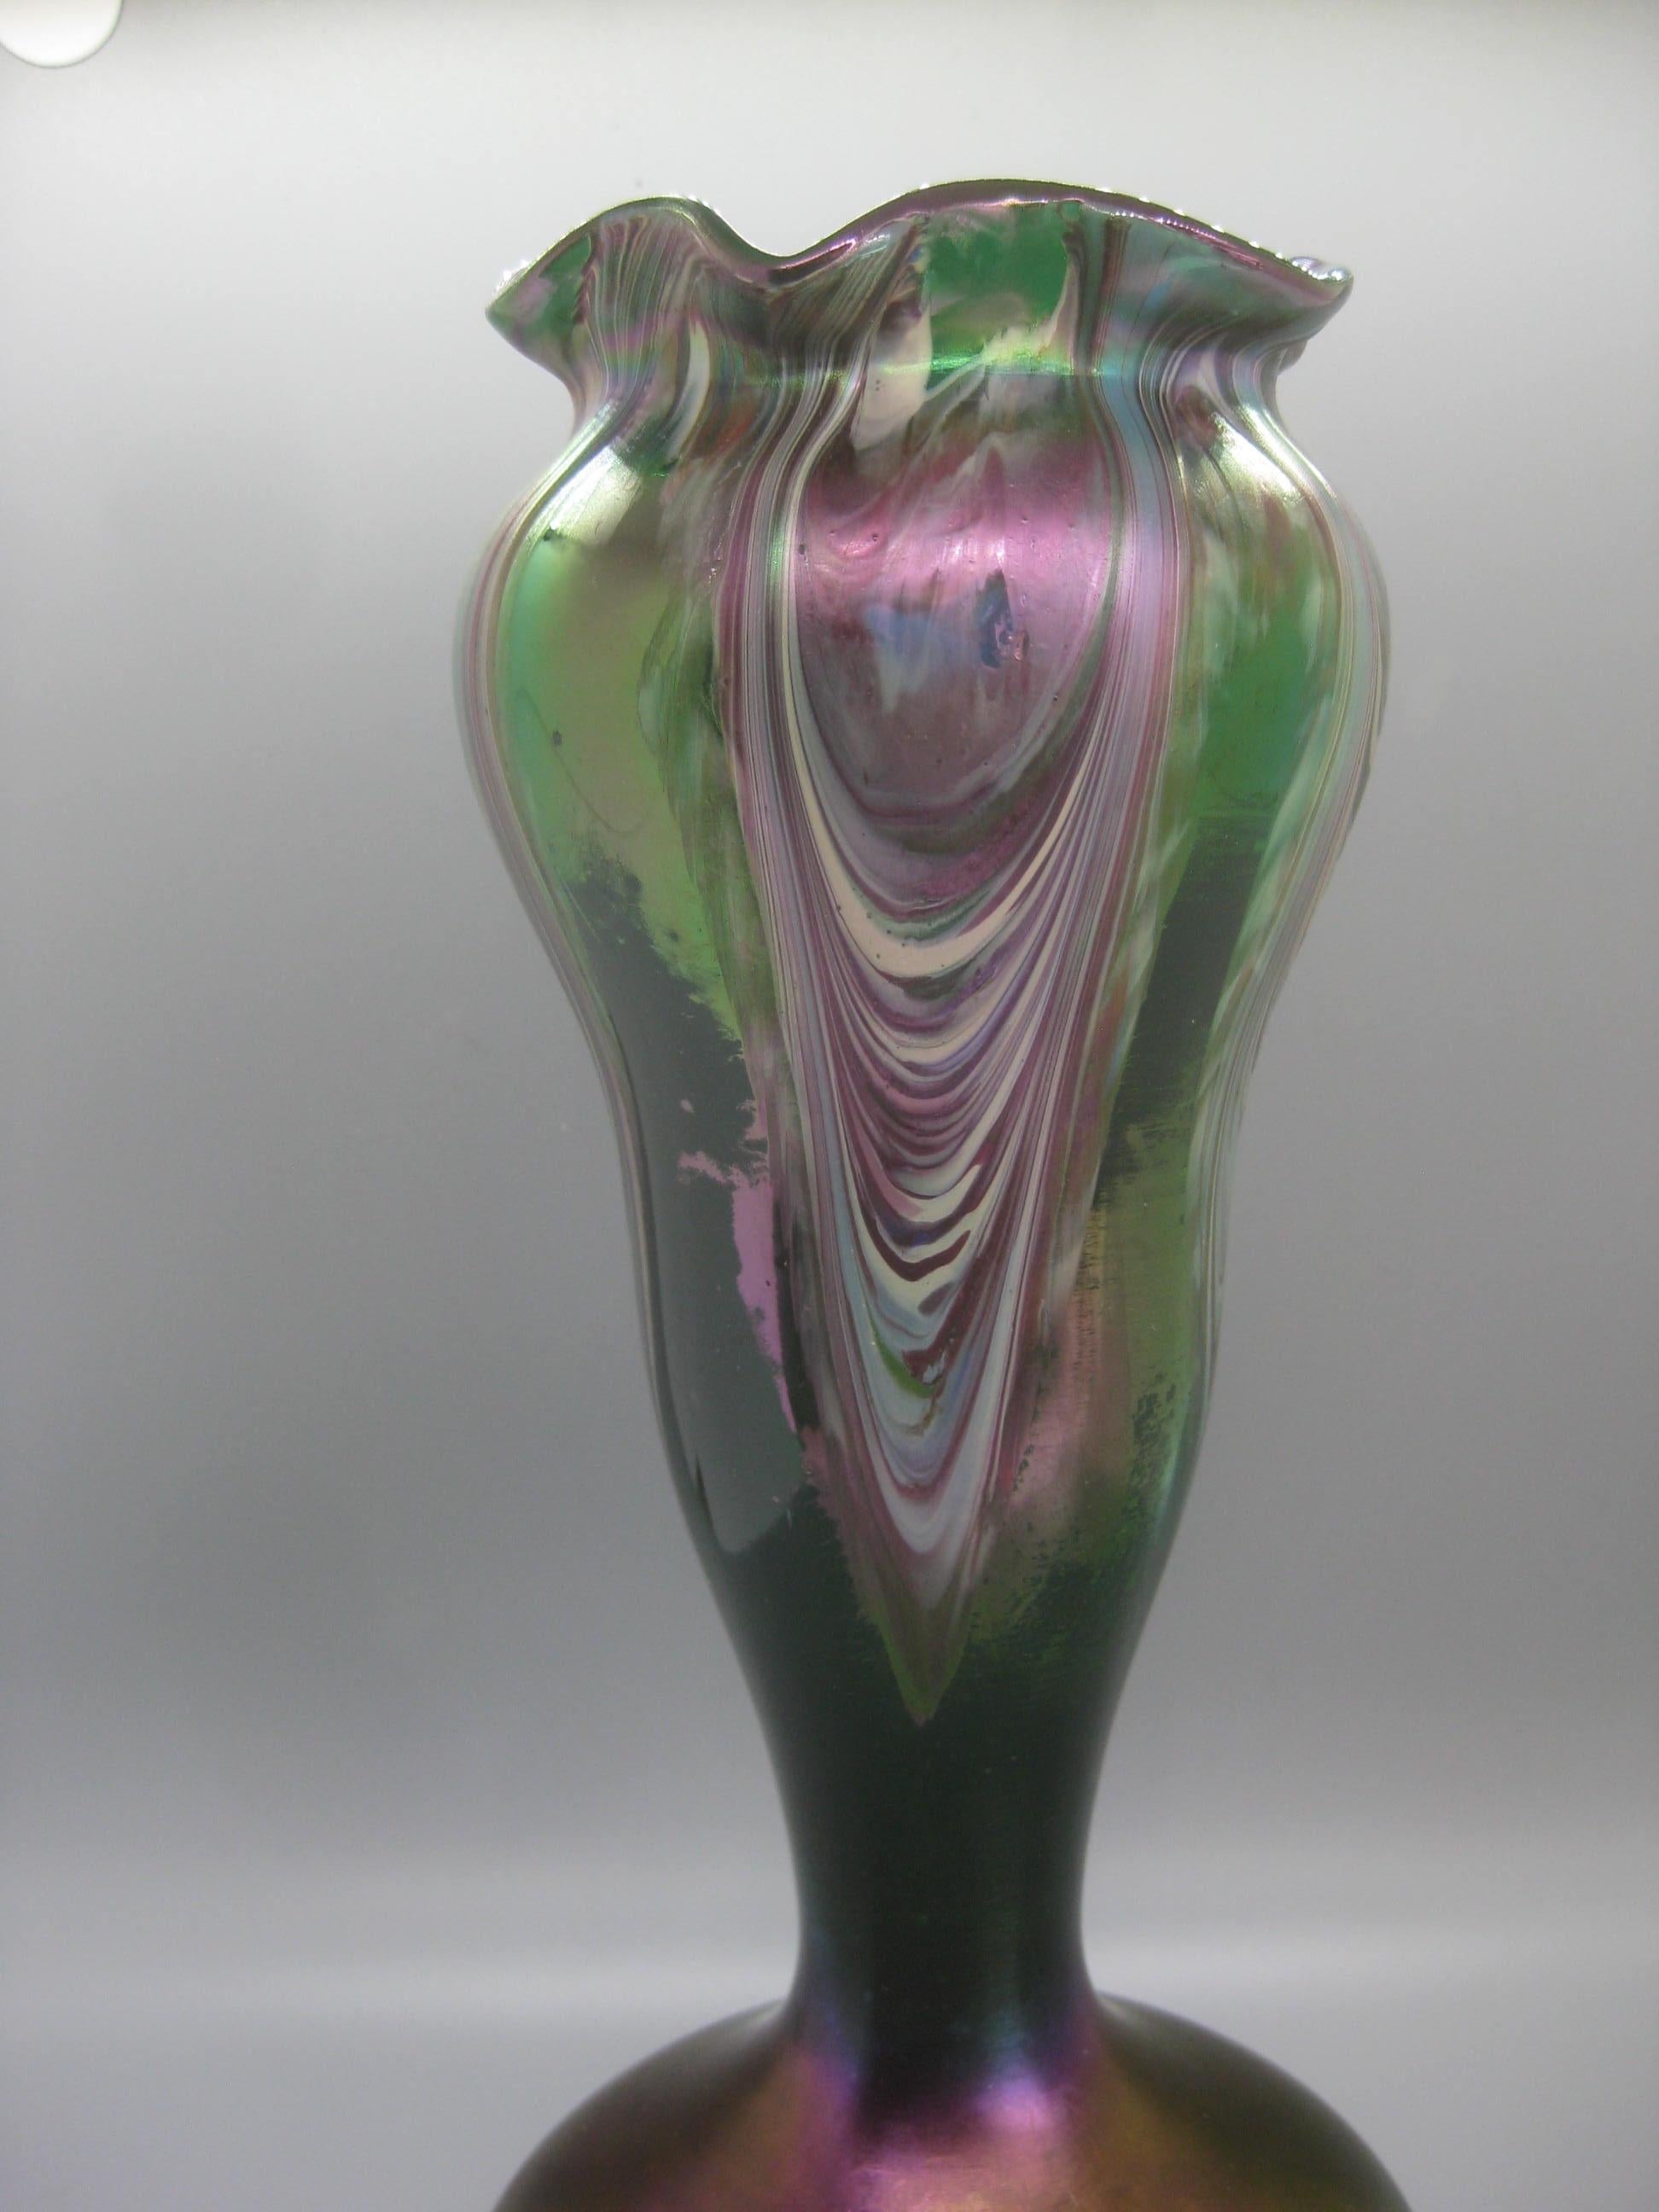 Atemberaubende Art Nouveau tschechischen böhmischen irisierenden gezogenen Feder Kunst Glasvase von Josef Rindskopf, ca. frühen 1900er Jahren. Die Vase hat wunderbare Farbe und Design. Grüner Klarglaskörper mit einem undurchsichtigen, gezogenen